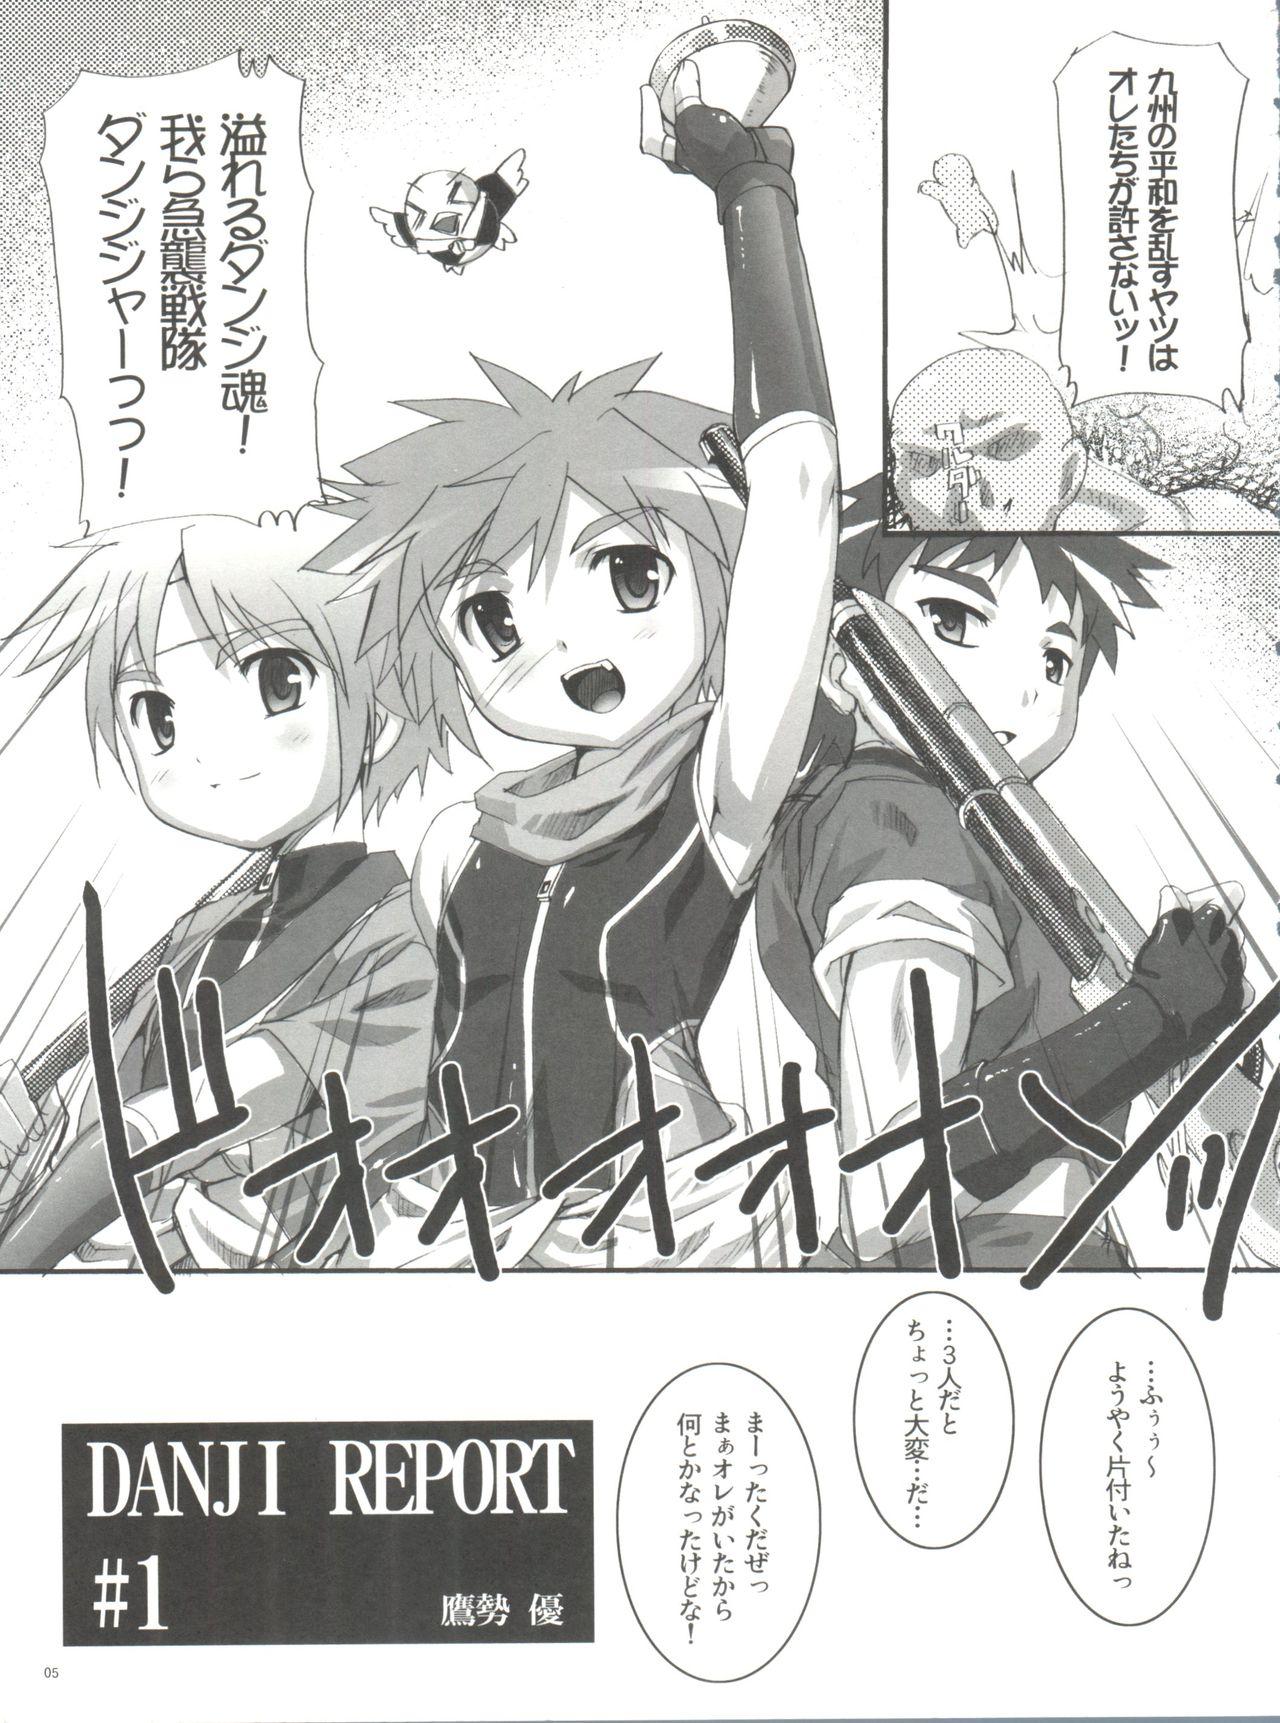 Danji Report: REVIEW 3